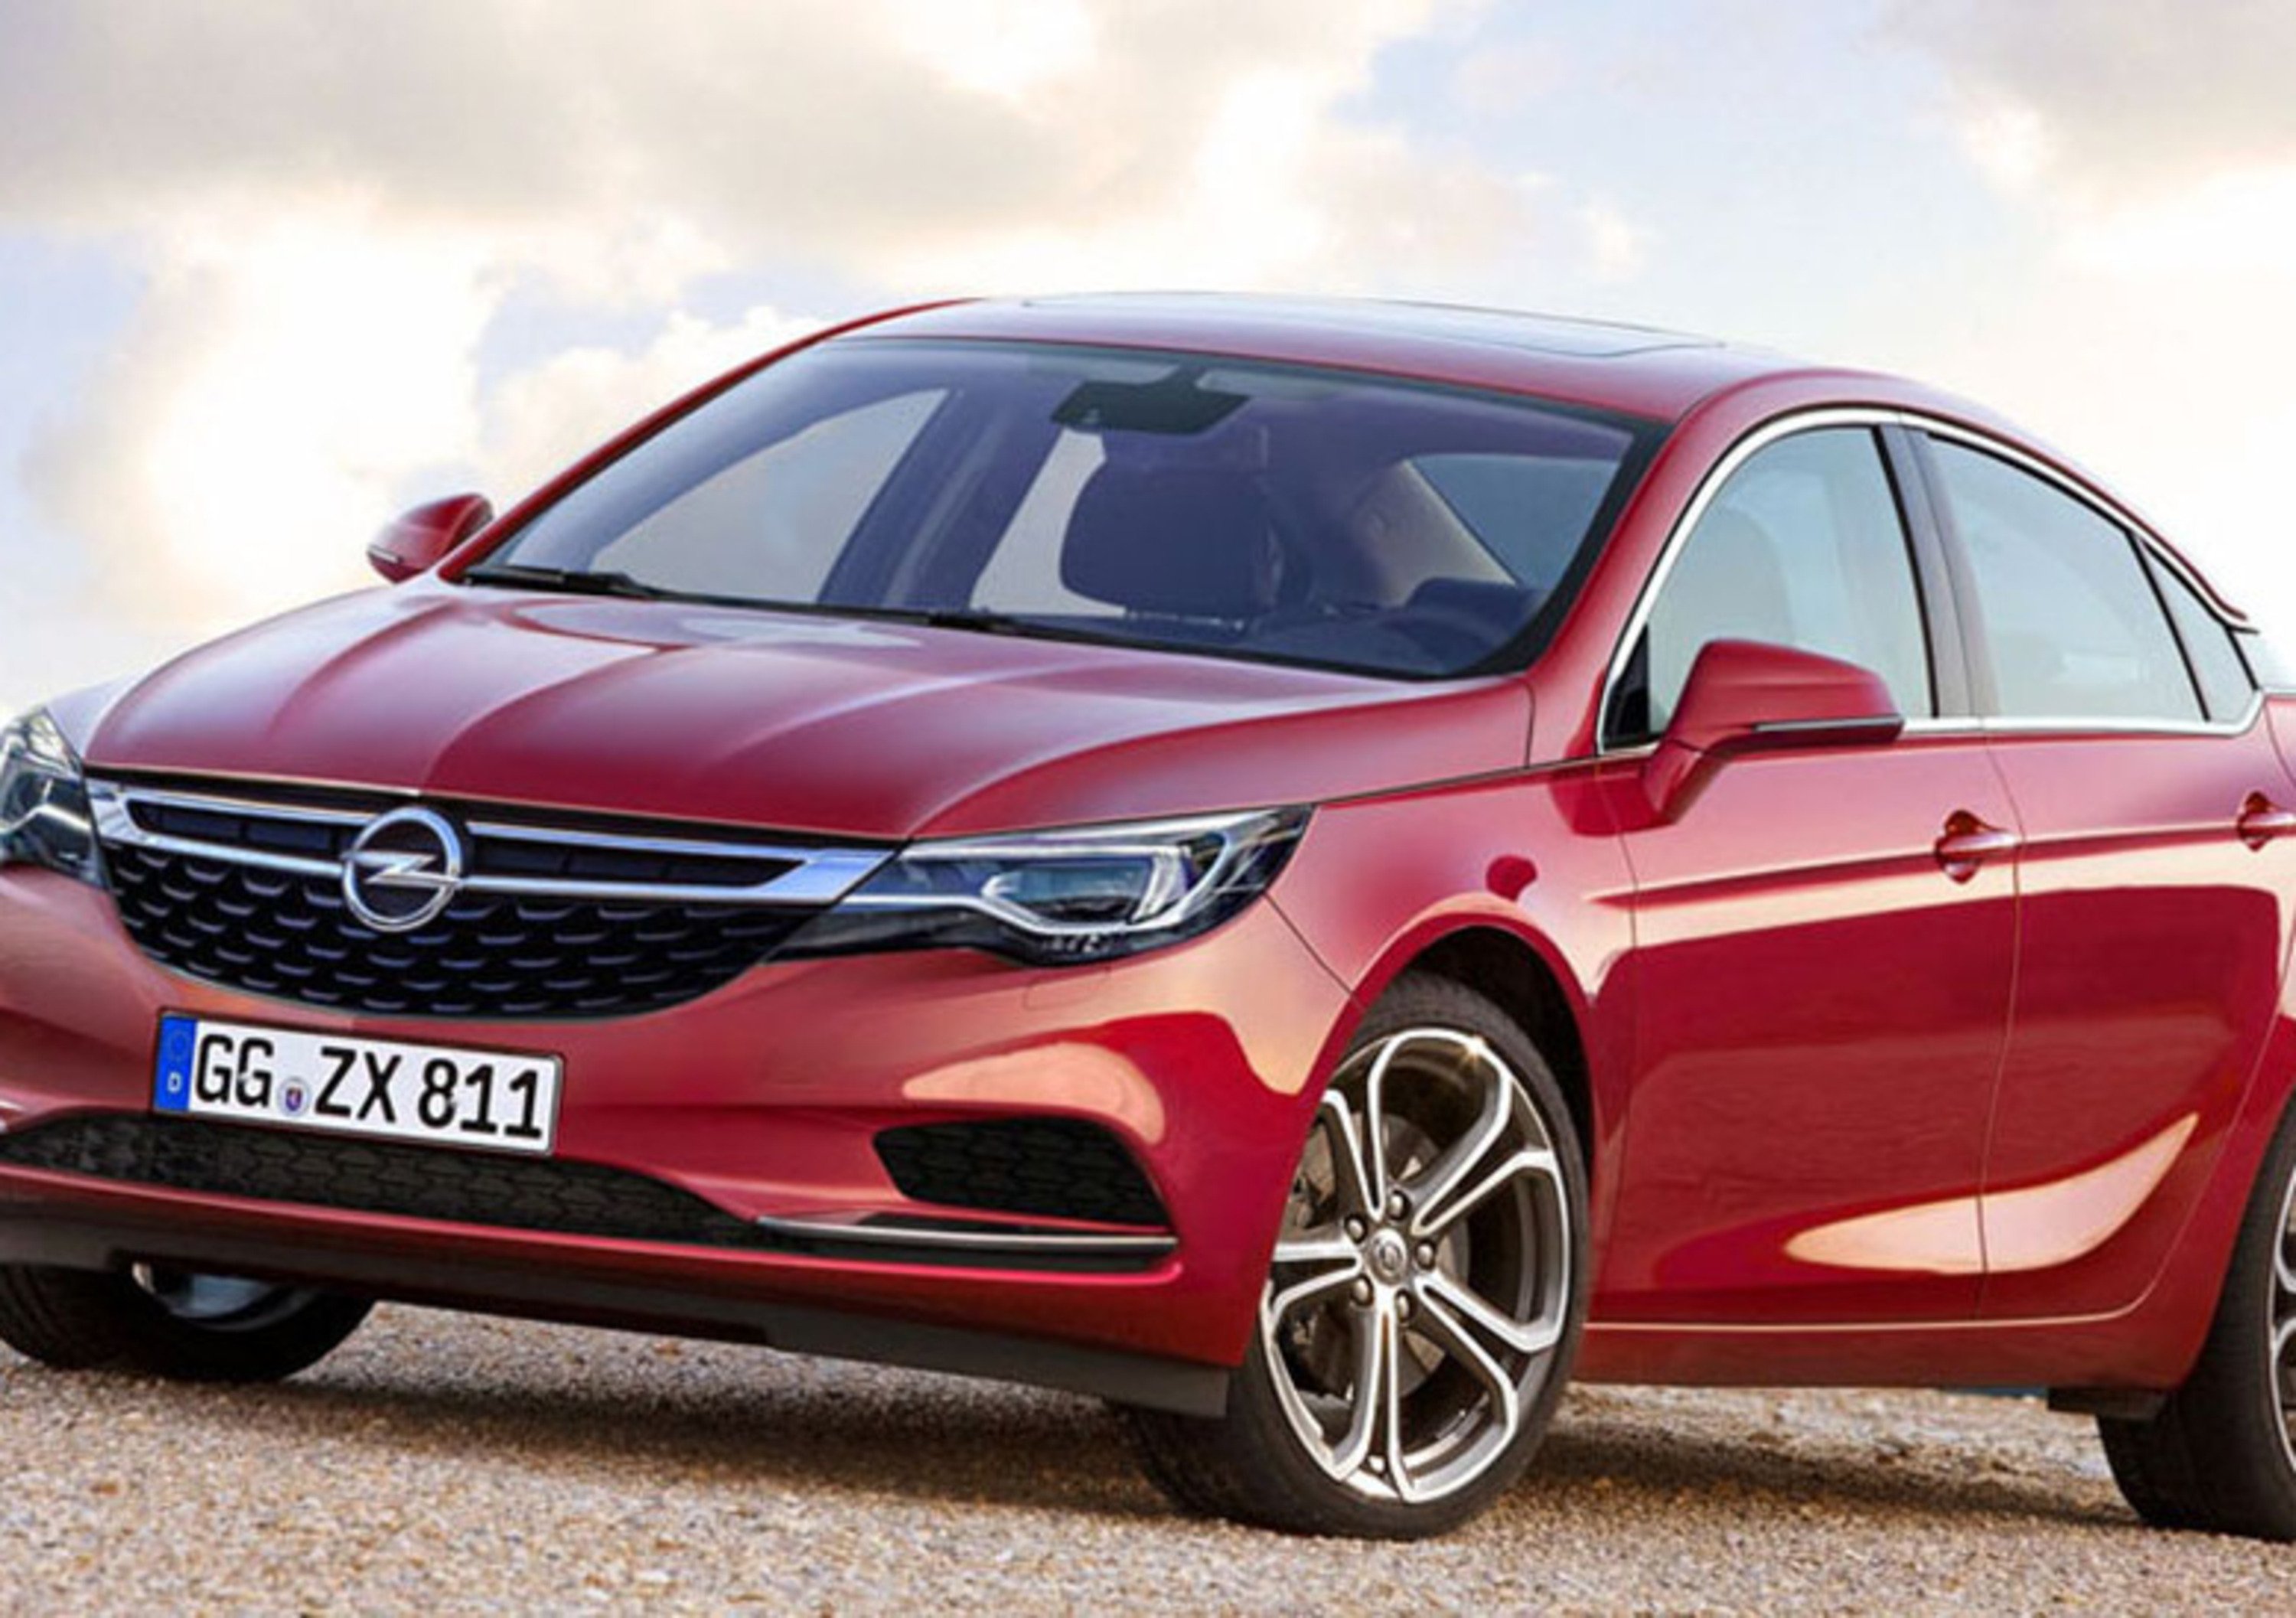 Nuova Opel Insignia: nel rendering, chiara ispirazione alla &ldquo;Monza&rdquo;